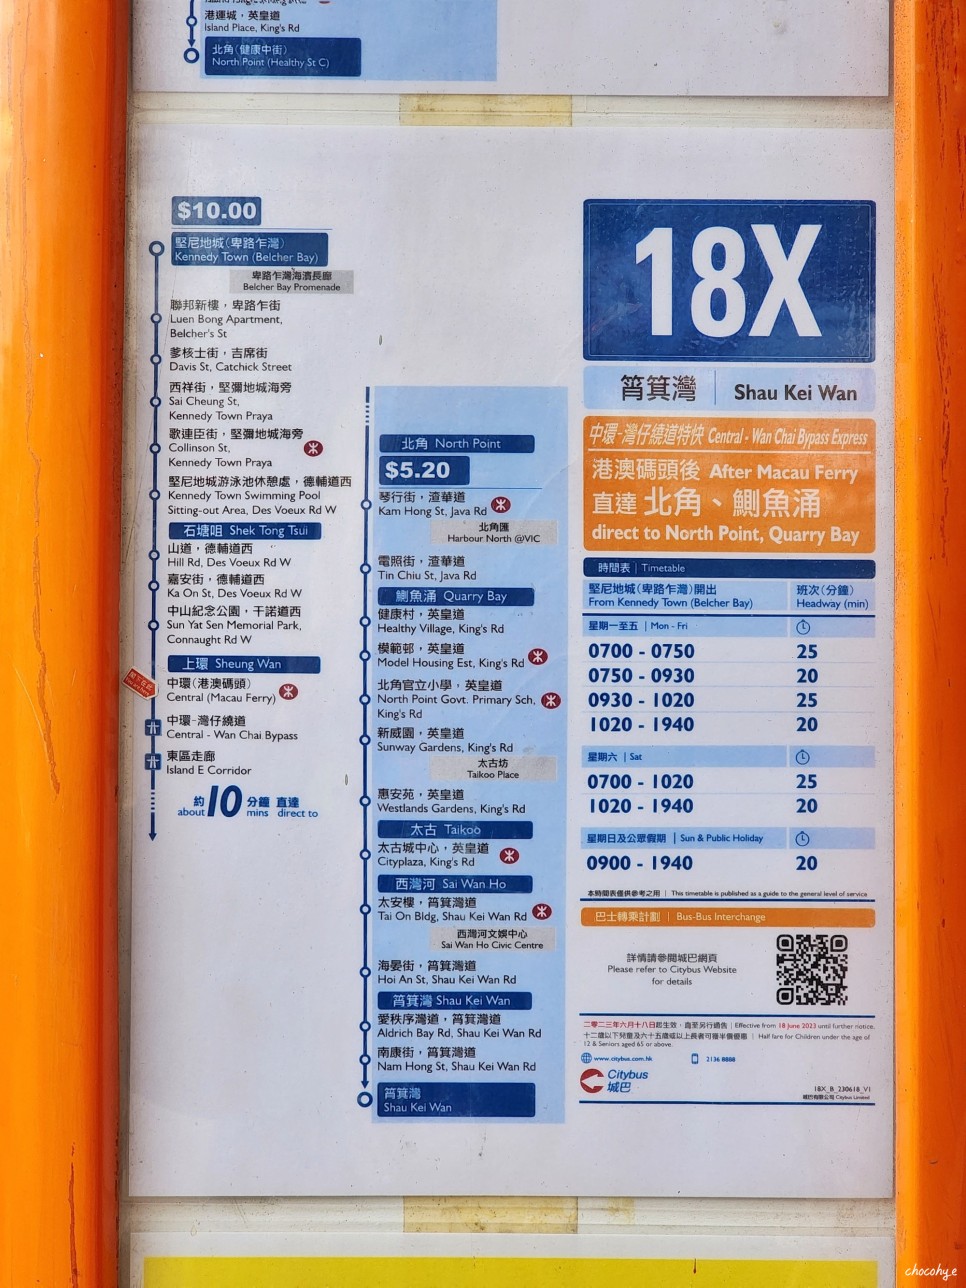 홍콩 여행 경비 환전 유심 지하철 물가 등 홍콩여행준비물 체크리스트